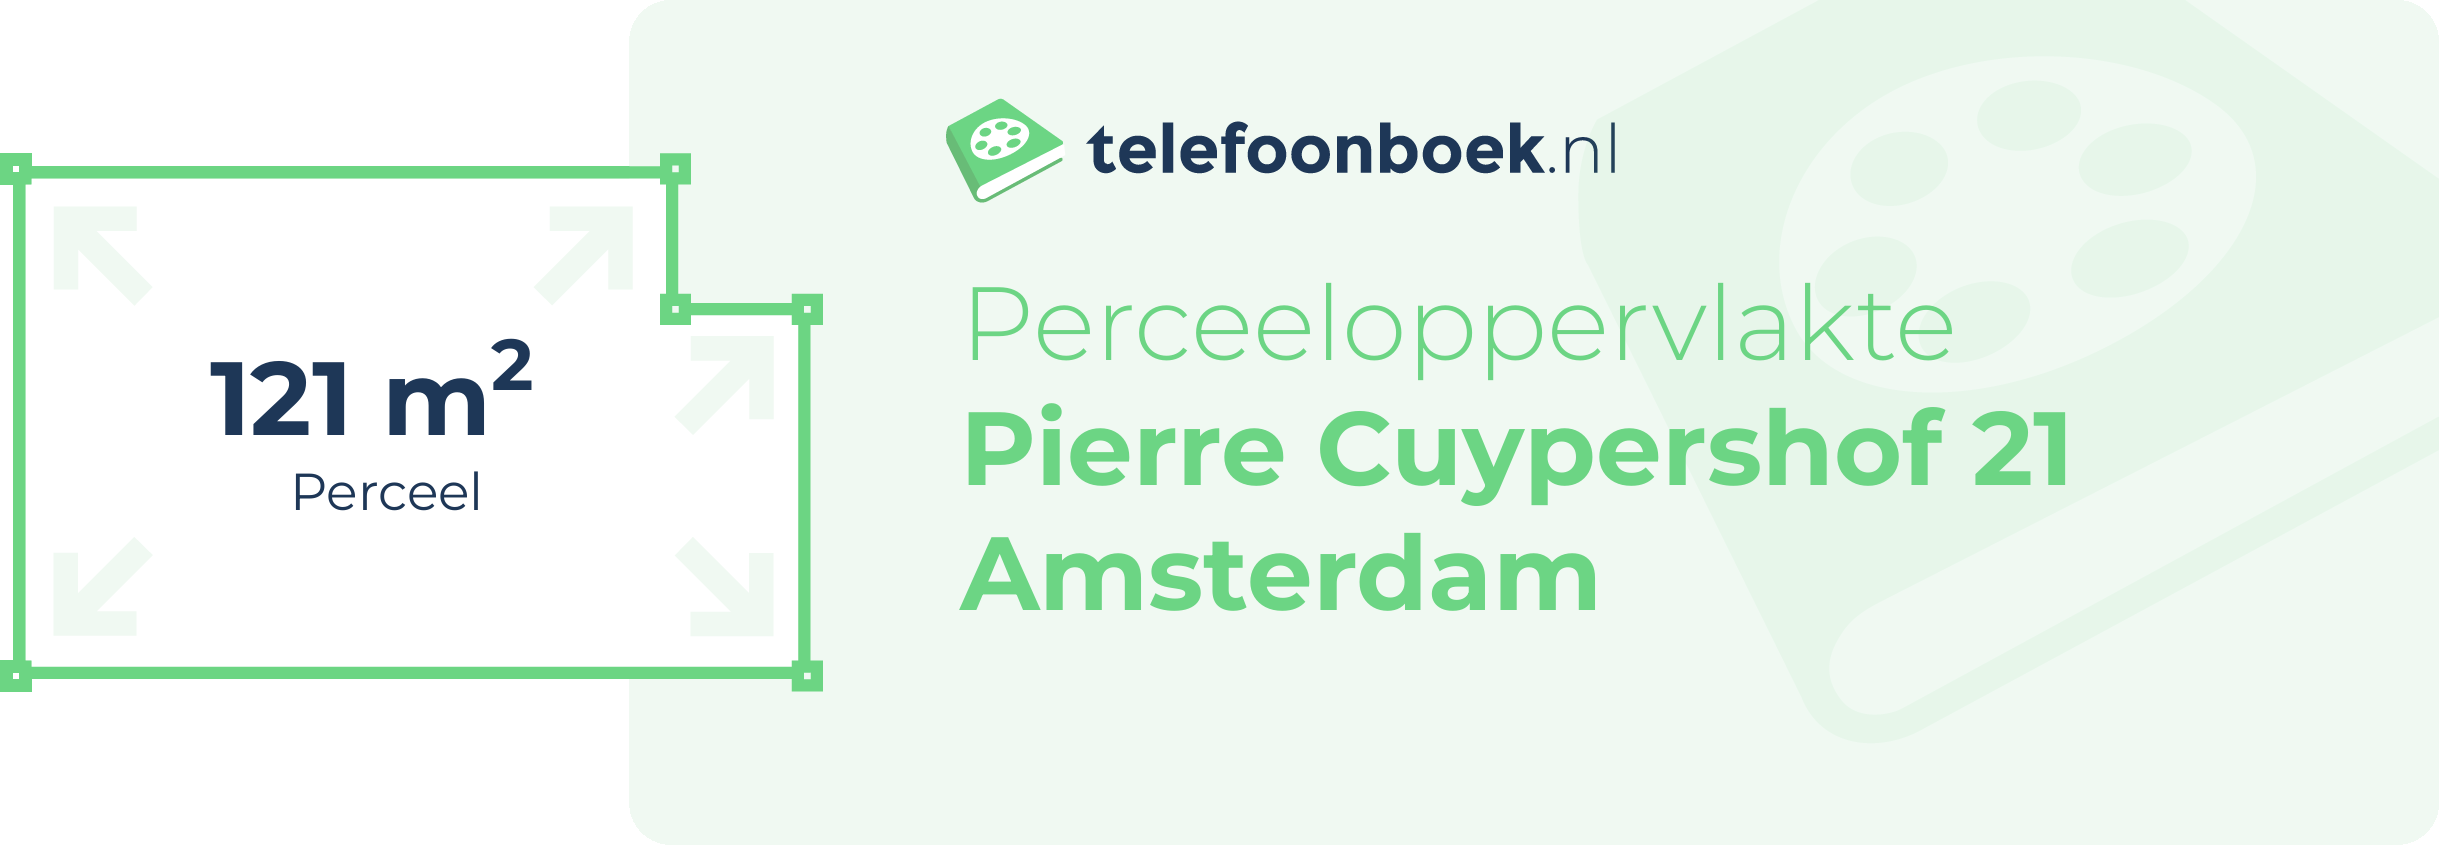 Perceeloppervlakte Pierre Cuypershof 21 Amsterdam